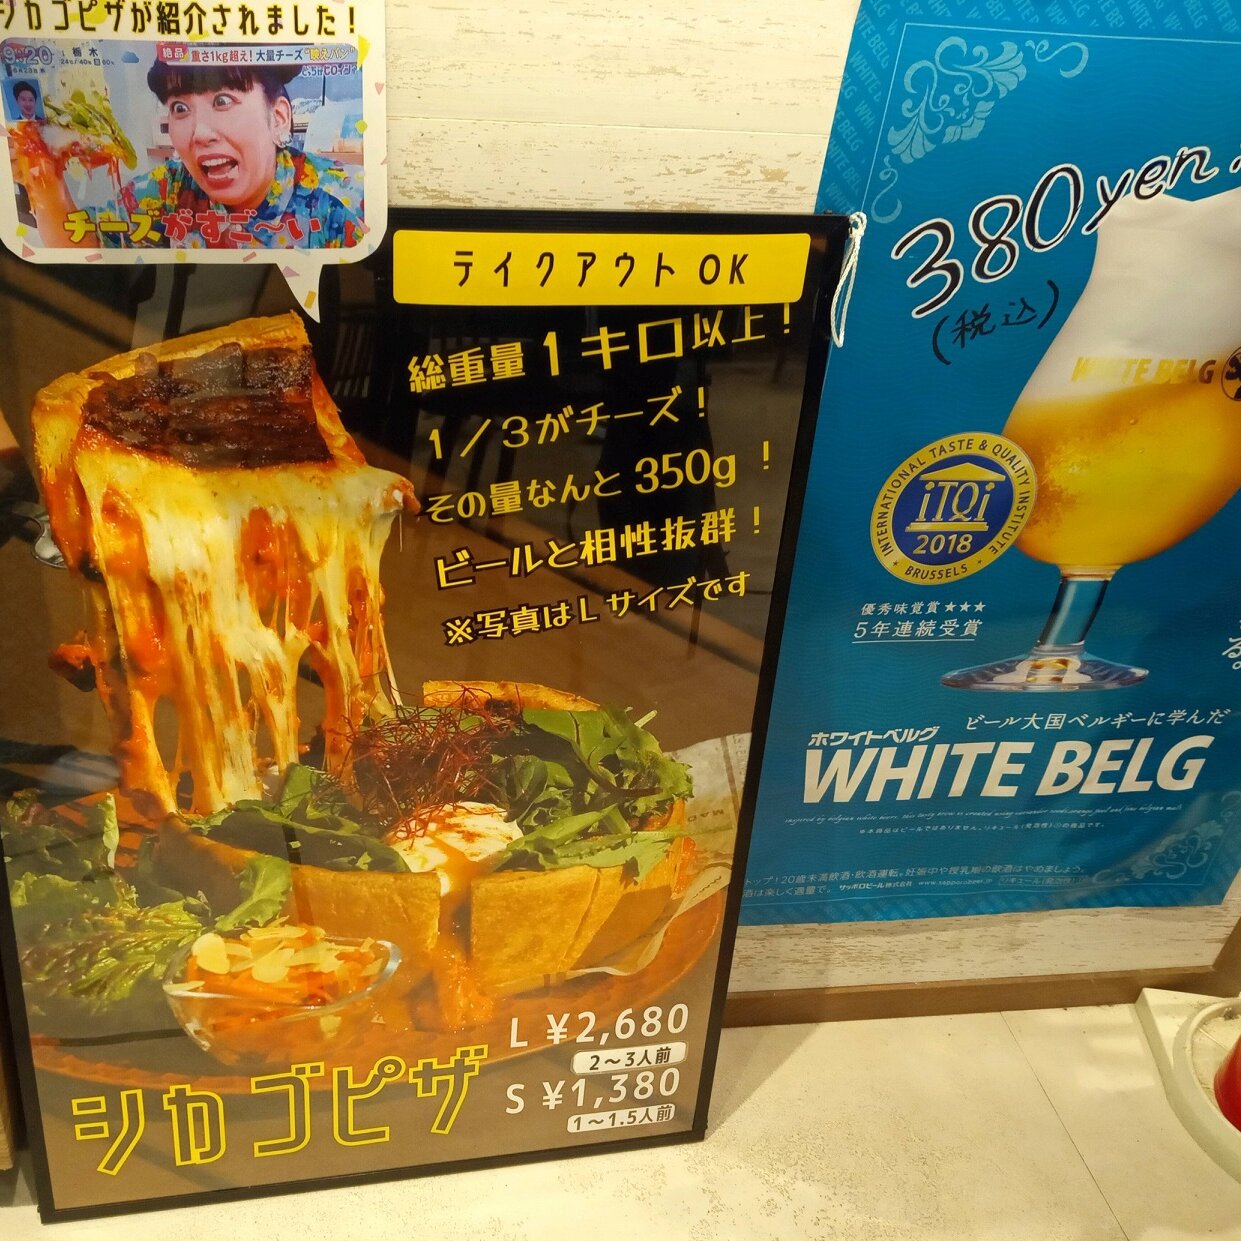 「ぱぱぱぱーん！」では、樽生ホワイトベルグも販売中。武蔵小杉エリアでは、このお店のみの販売だそう。フルーティーなな香りでビールの苦みが苦手な人も飲みやすい。シカゴピザとの相性もばっちり。